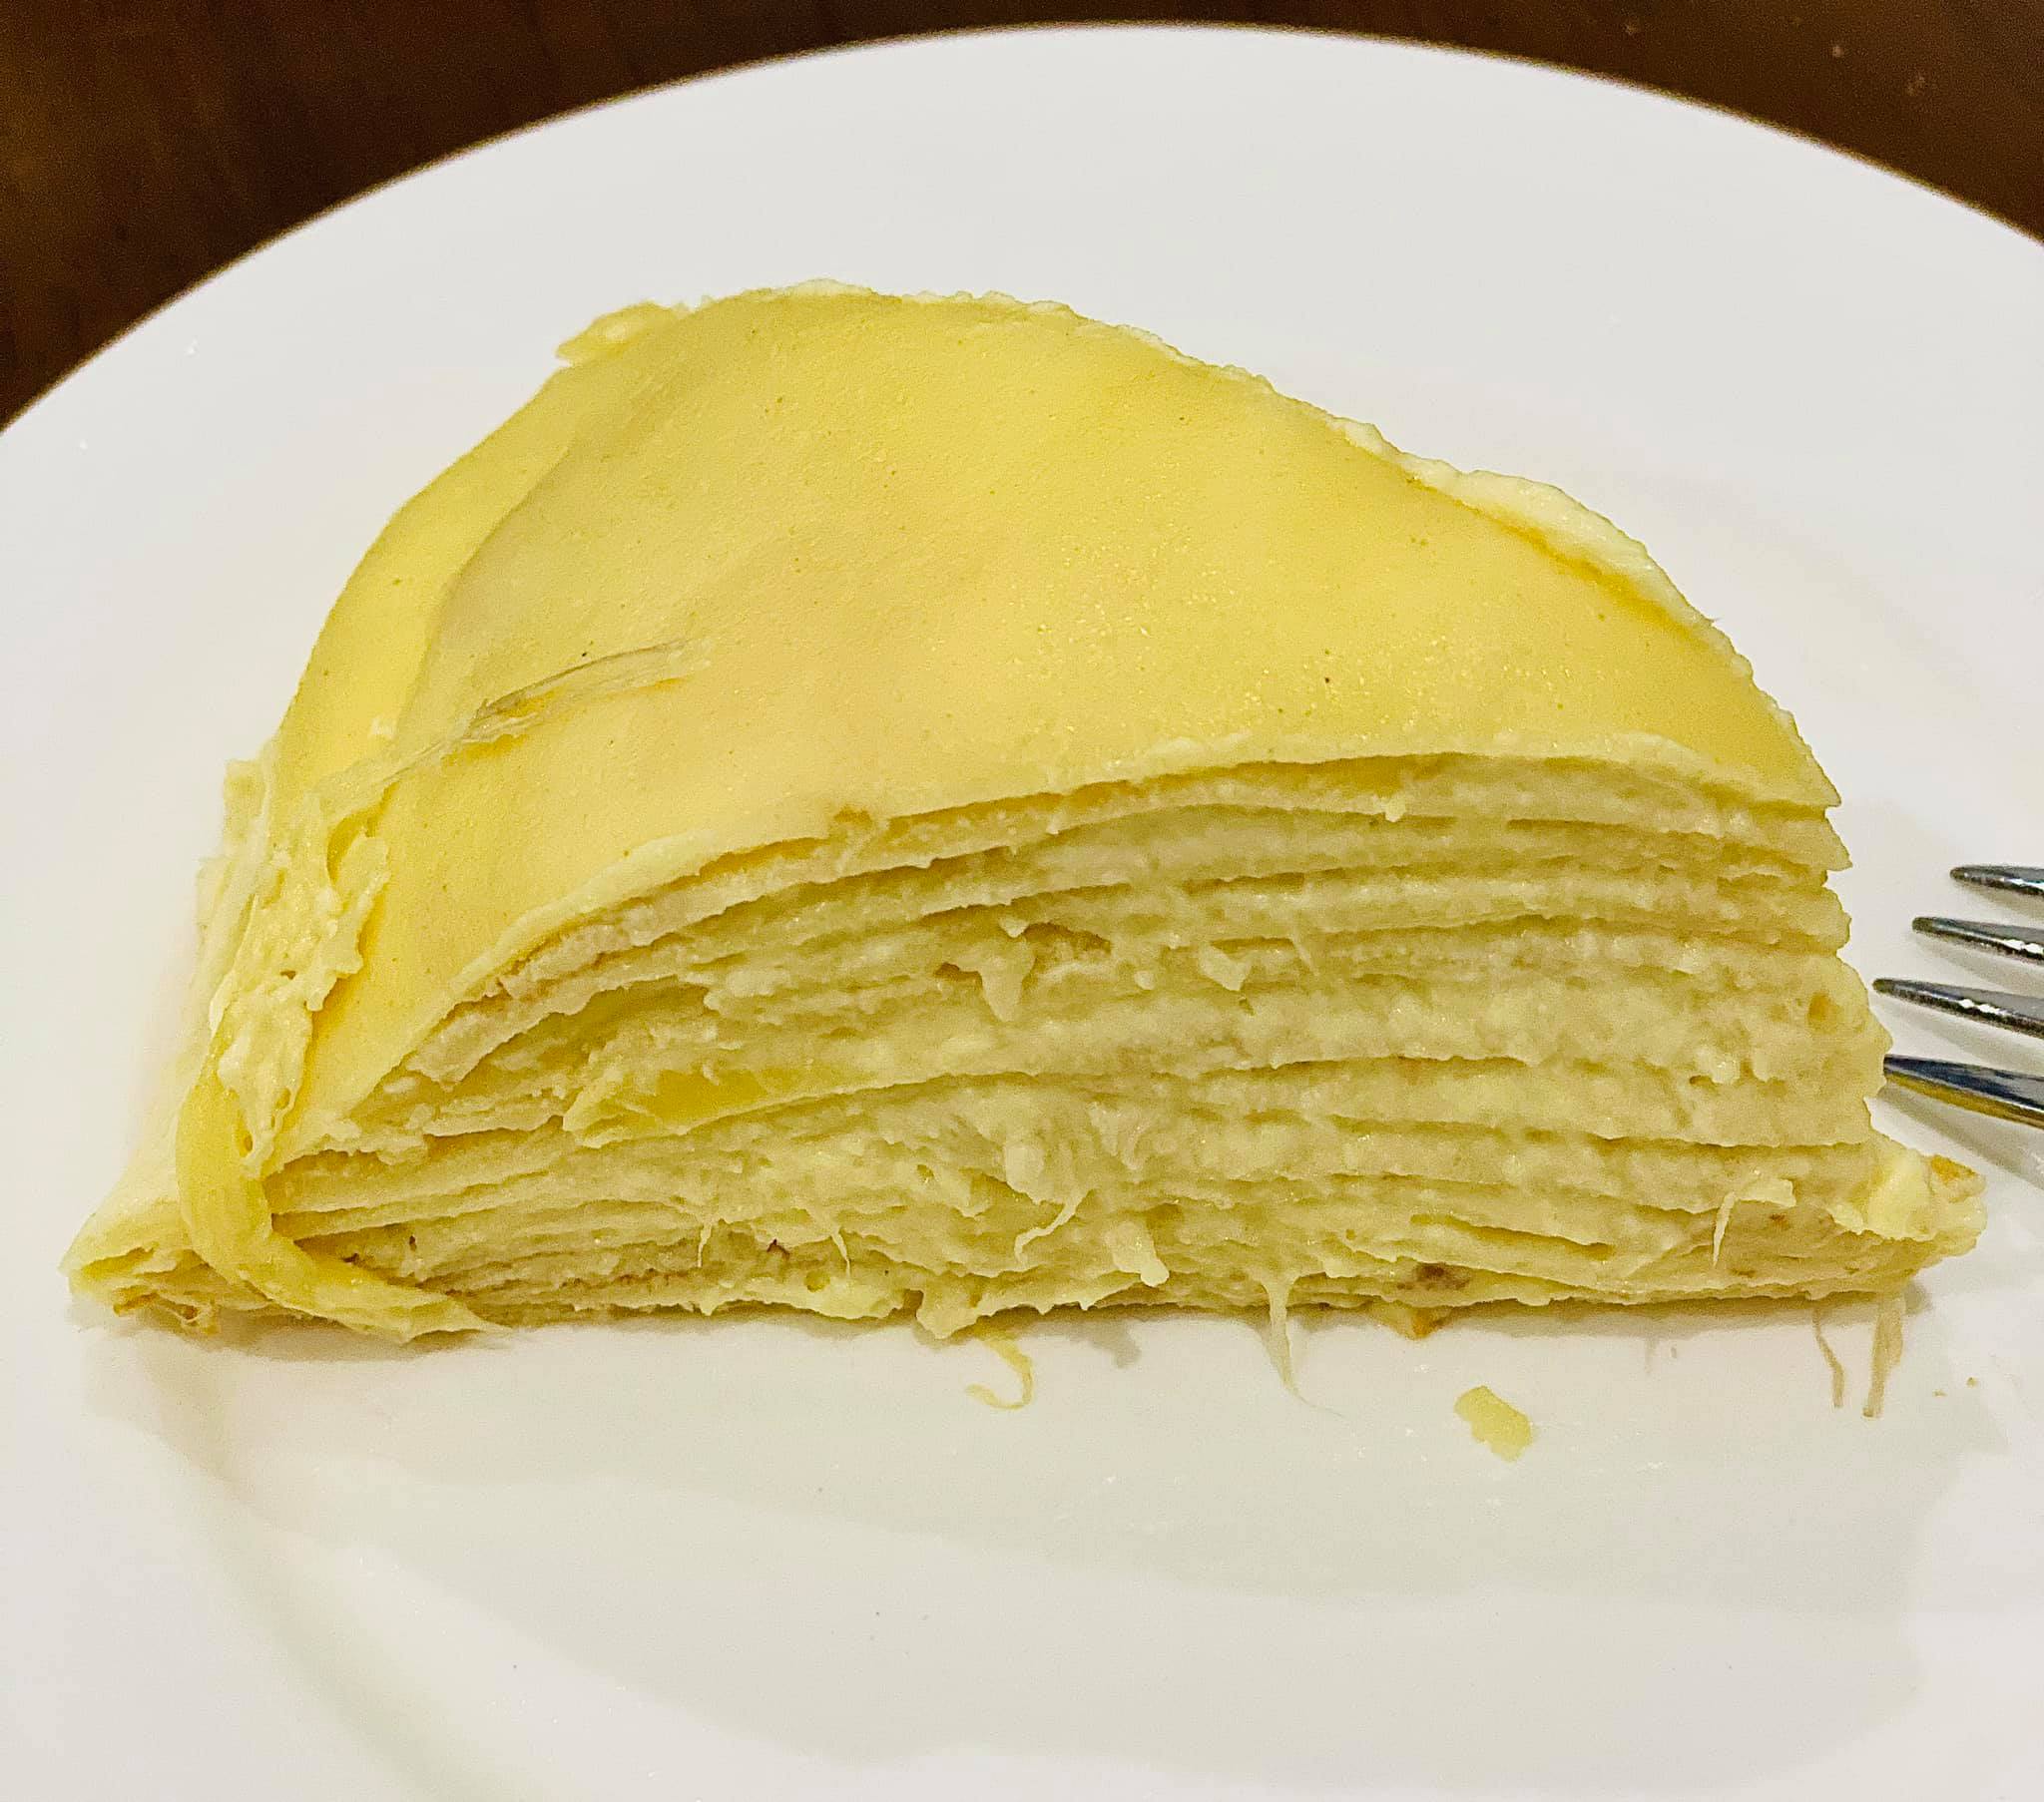 banh crepe sau rieng1 - Cách làm bánh crepe sầu riêng ngàn lớp thơm ngon, hấp dẫn